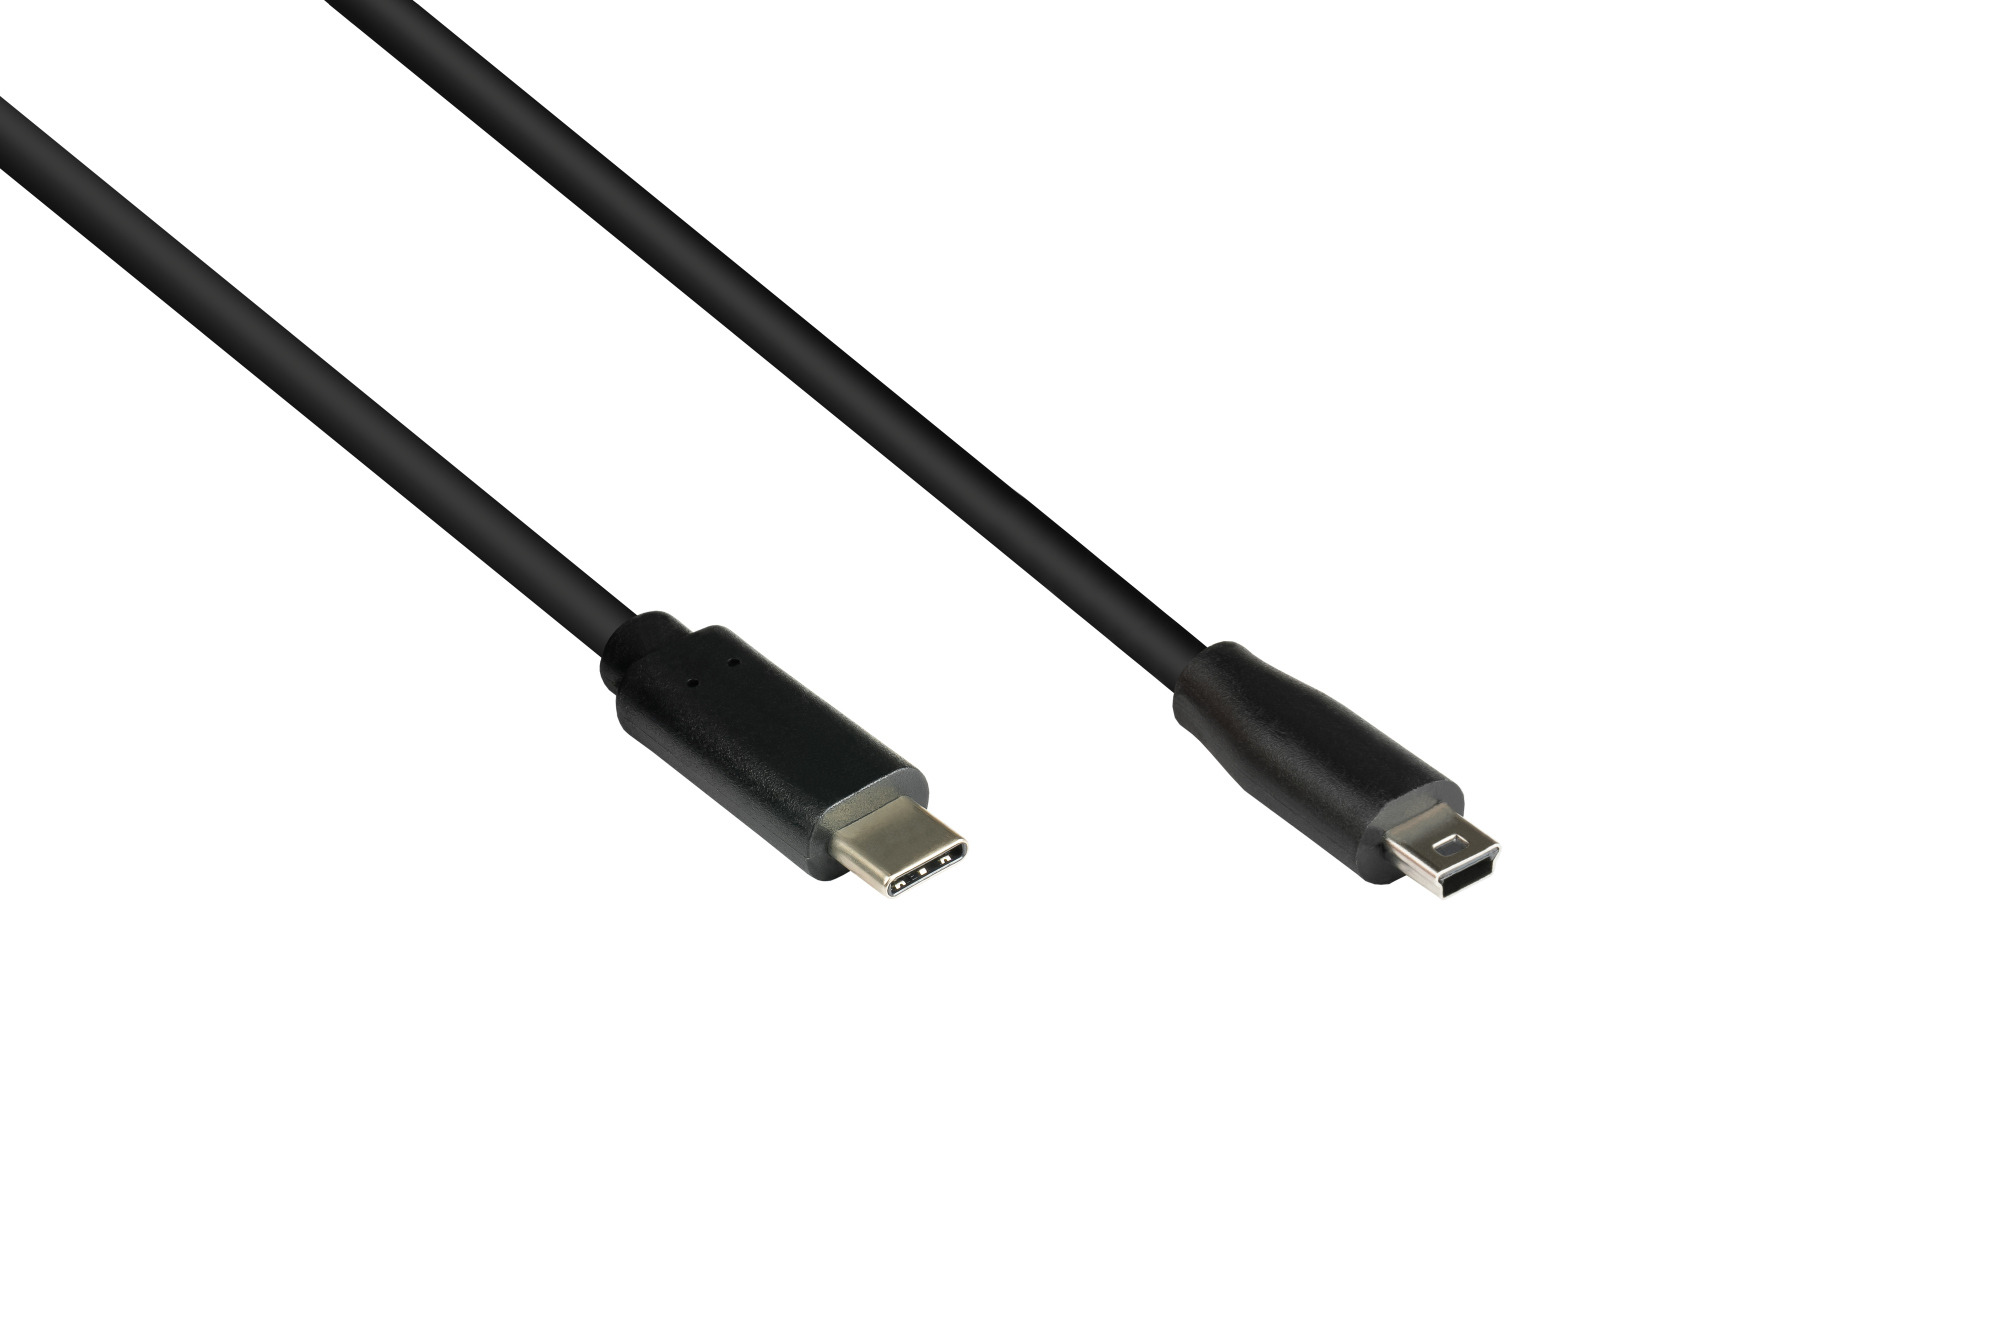 Anschlusskabel USB 2.0, USB-C™ Stecker an Stecker Mini B 5-pin, schwarz, 3m, Good Connections®